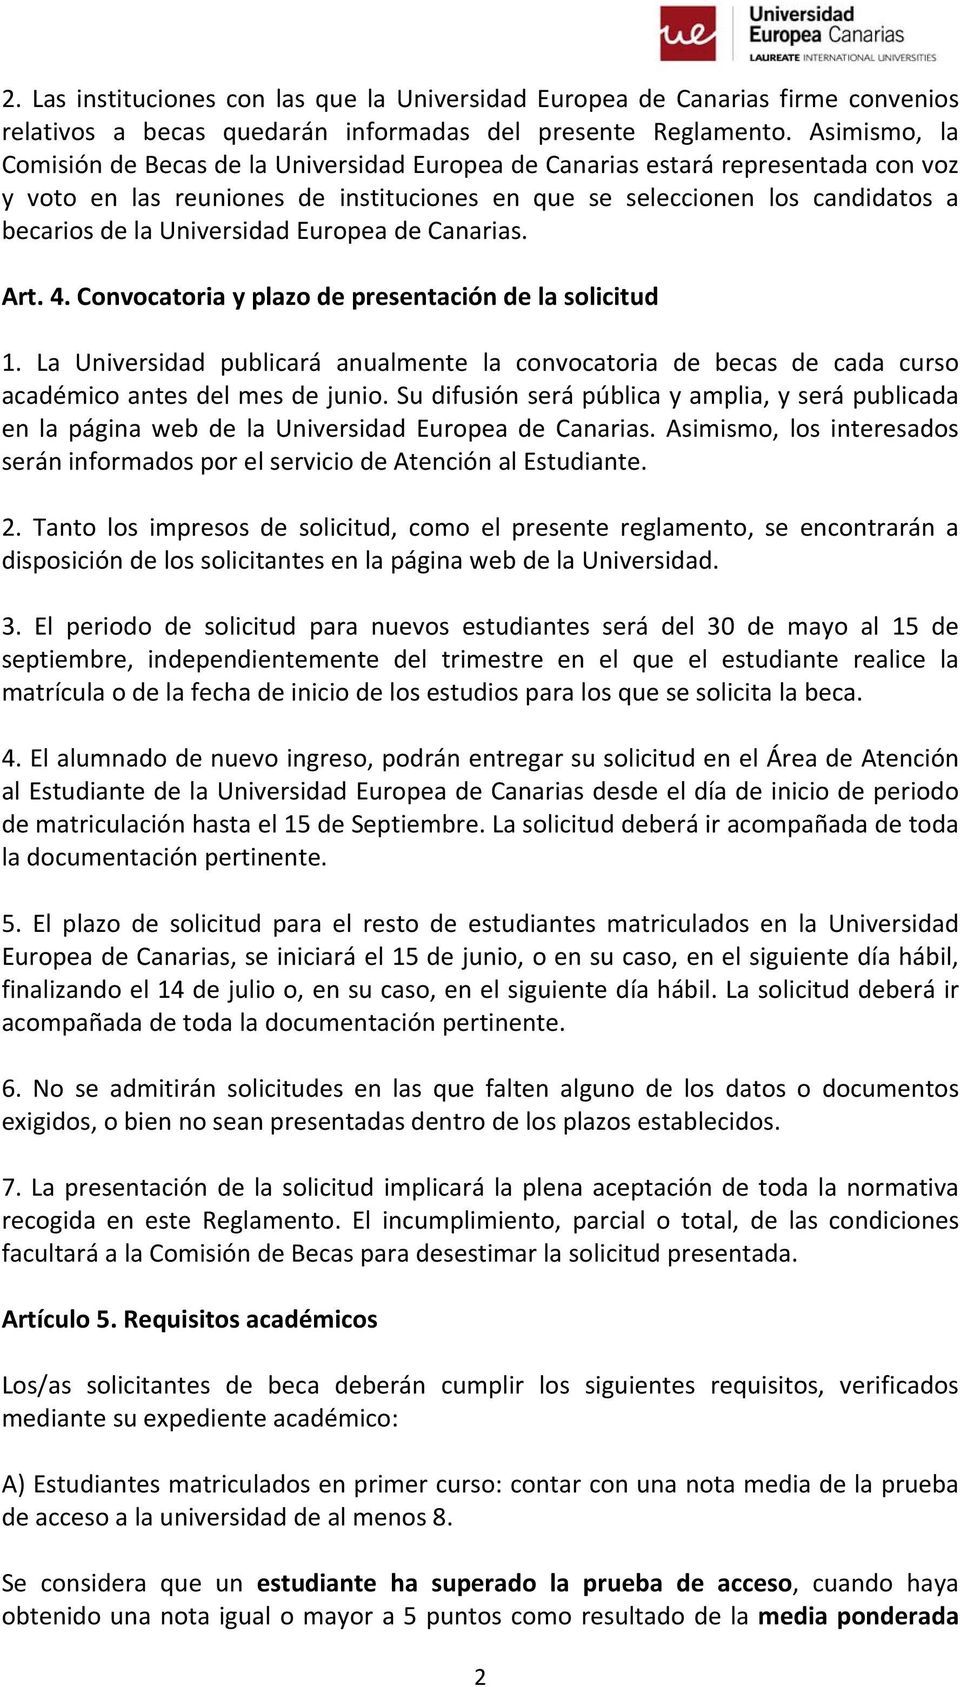 Universidad Europea de Canarias. Art. 4. Convocatoria y plazo de presentación de la solicitud 1.